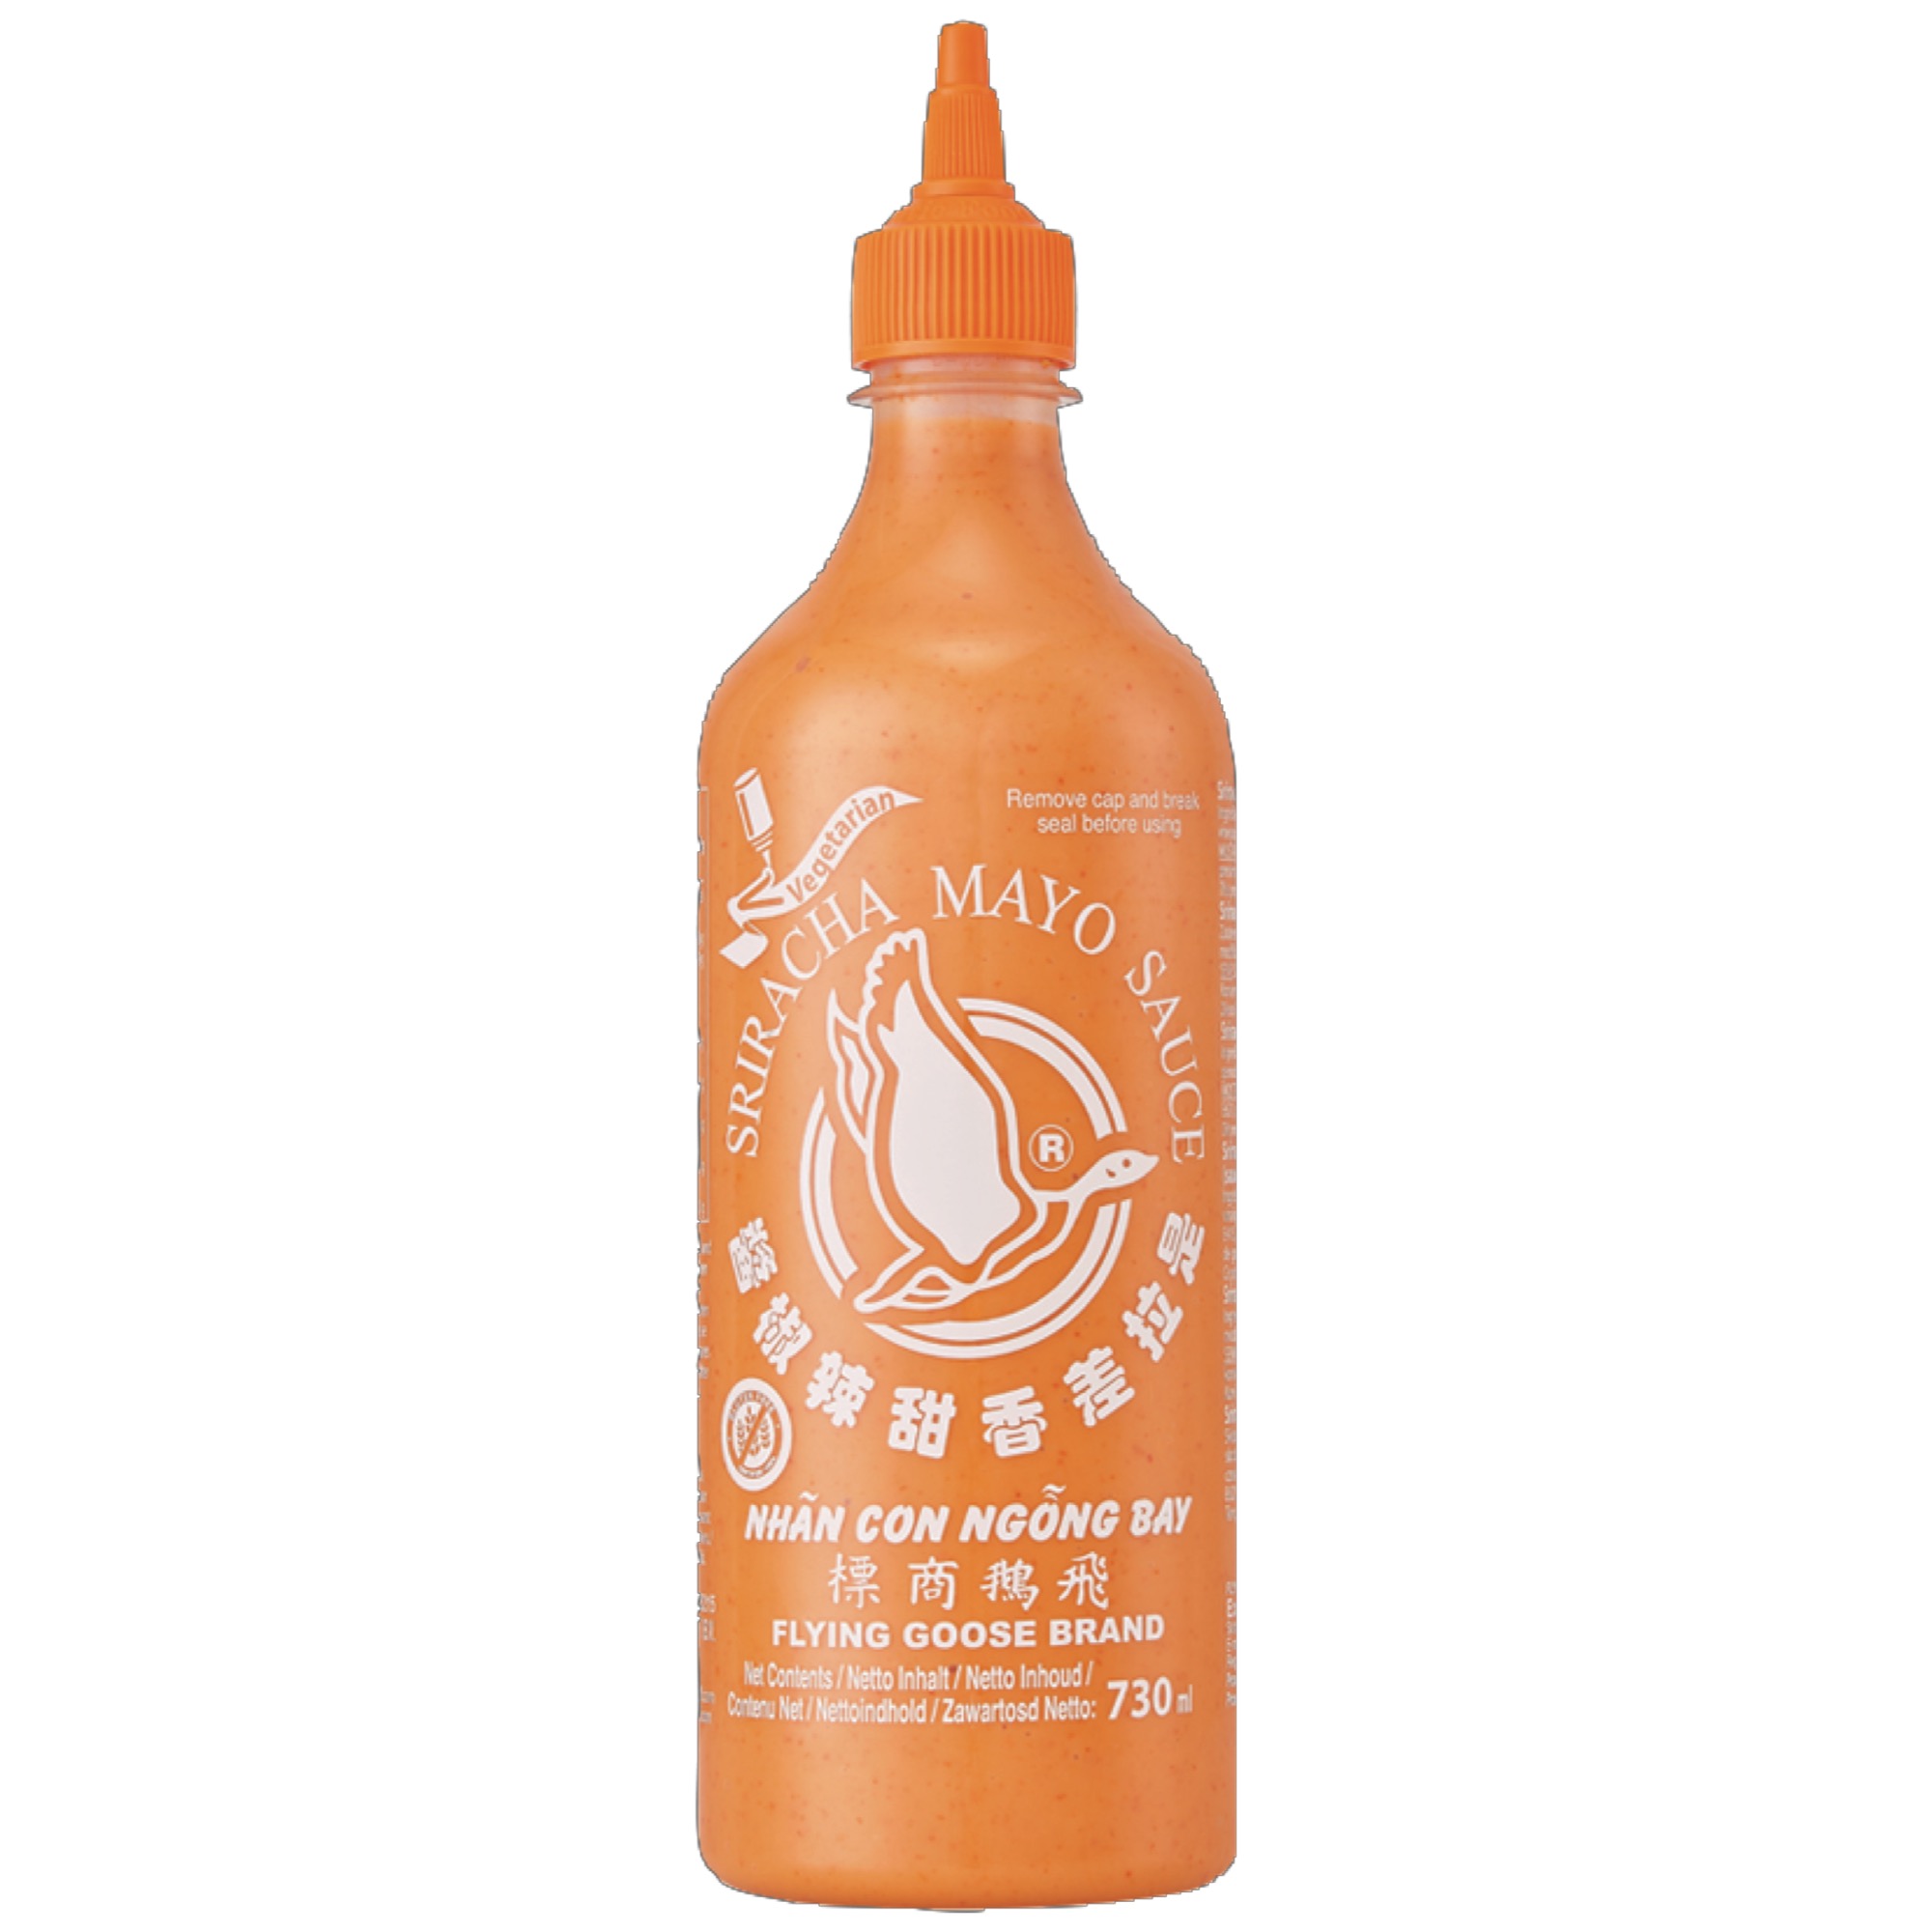 Sriracha Chili Mayo omáčka pikant 730ml